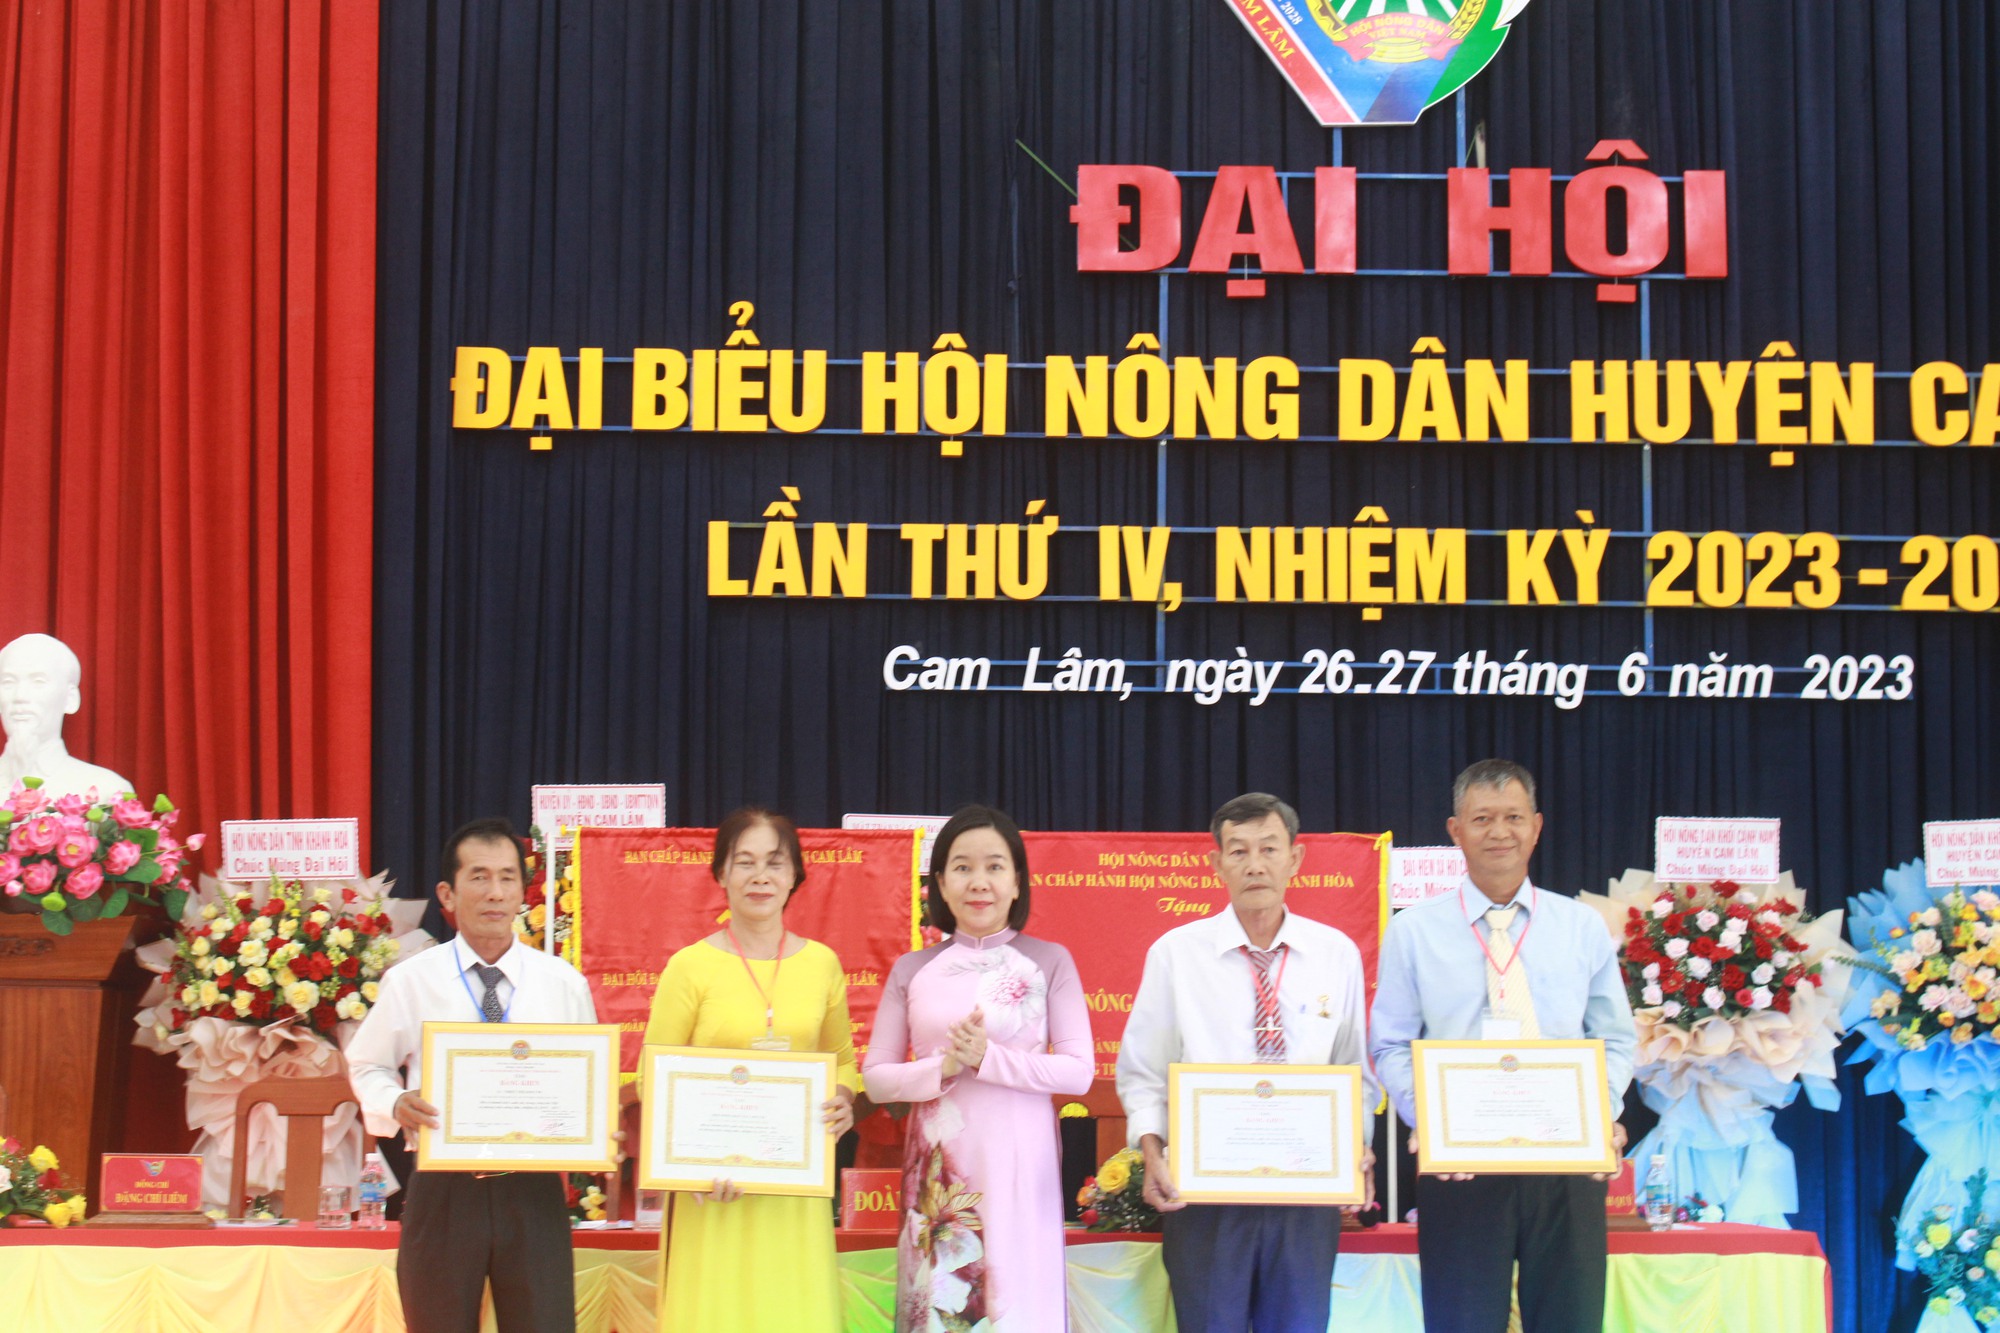 Khánh Hòa: Ông Phạm Hồng Thịnh tái đắc cử Chủ tịch Hội Nông dân huyện Cam Lâm - Ảnh 13.